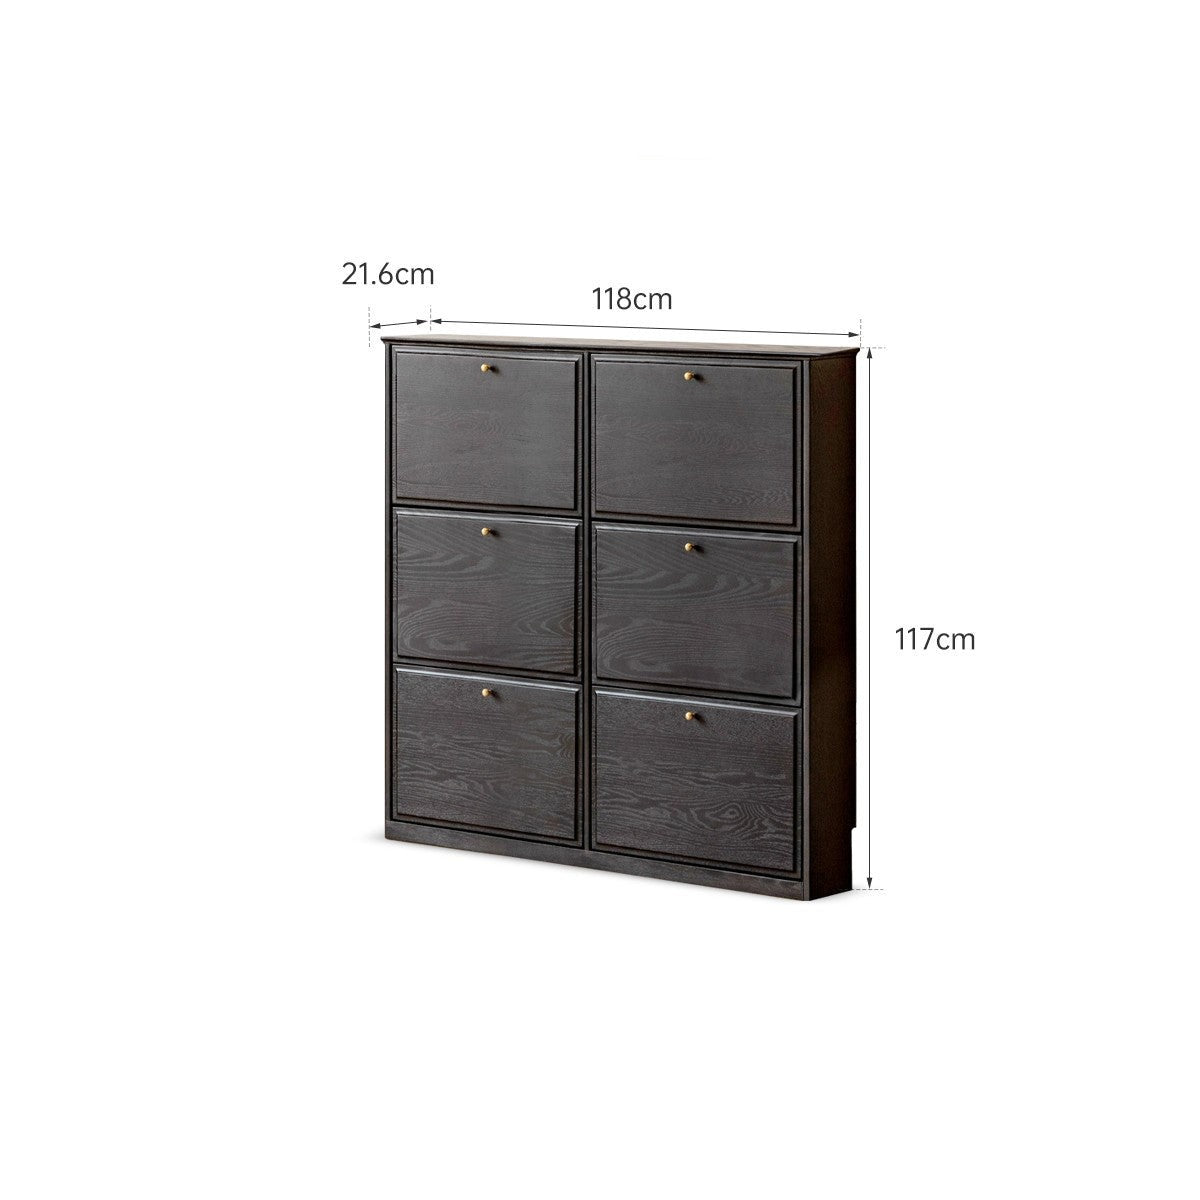 Oak solid wood American retro black narrow shoe cabinet door entrance cabinet "